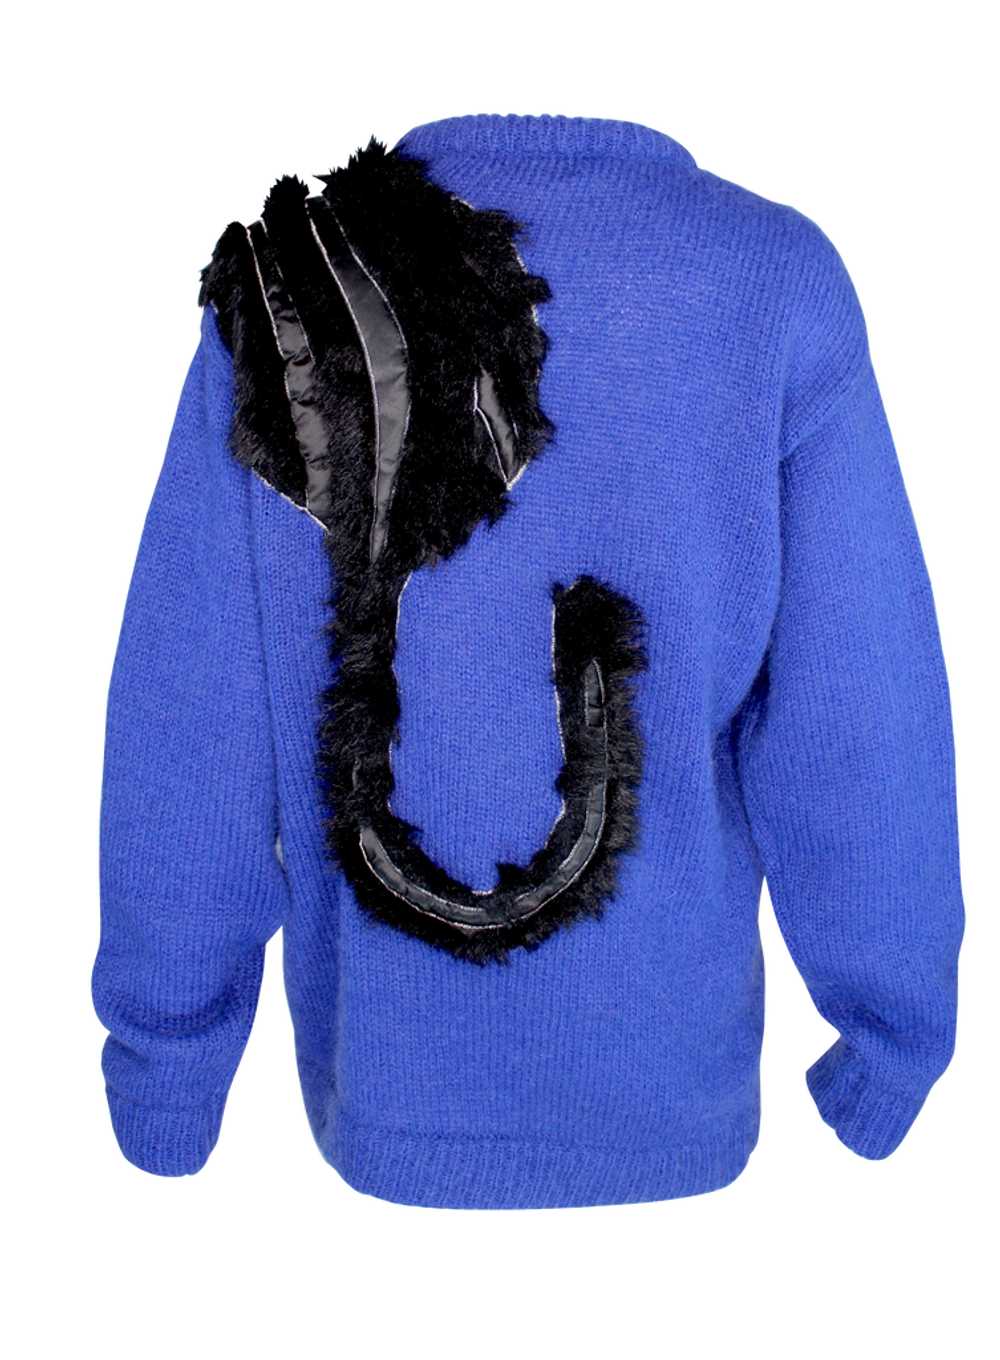 Kansai Yamamoto Cobalt Blue Knit Sweater with Bla… - image 4